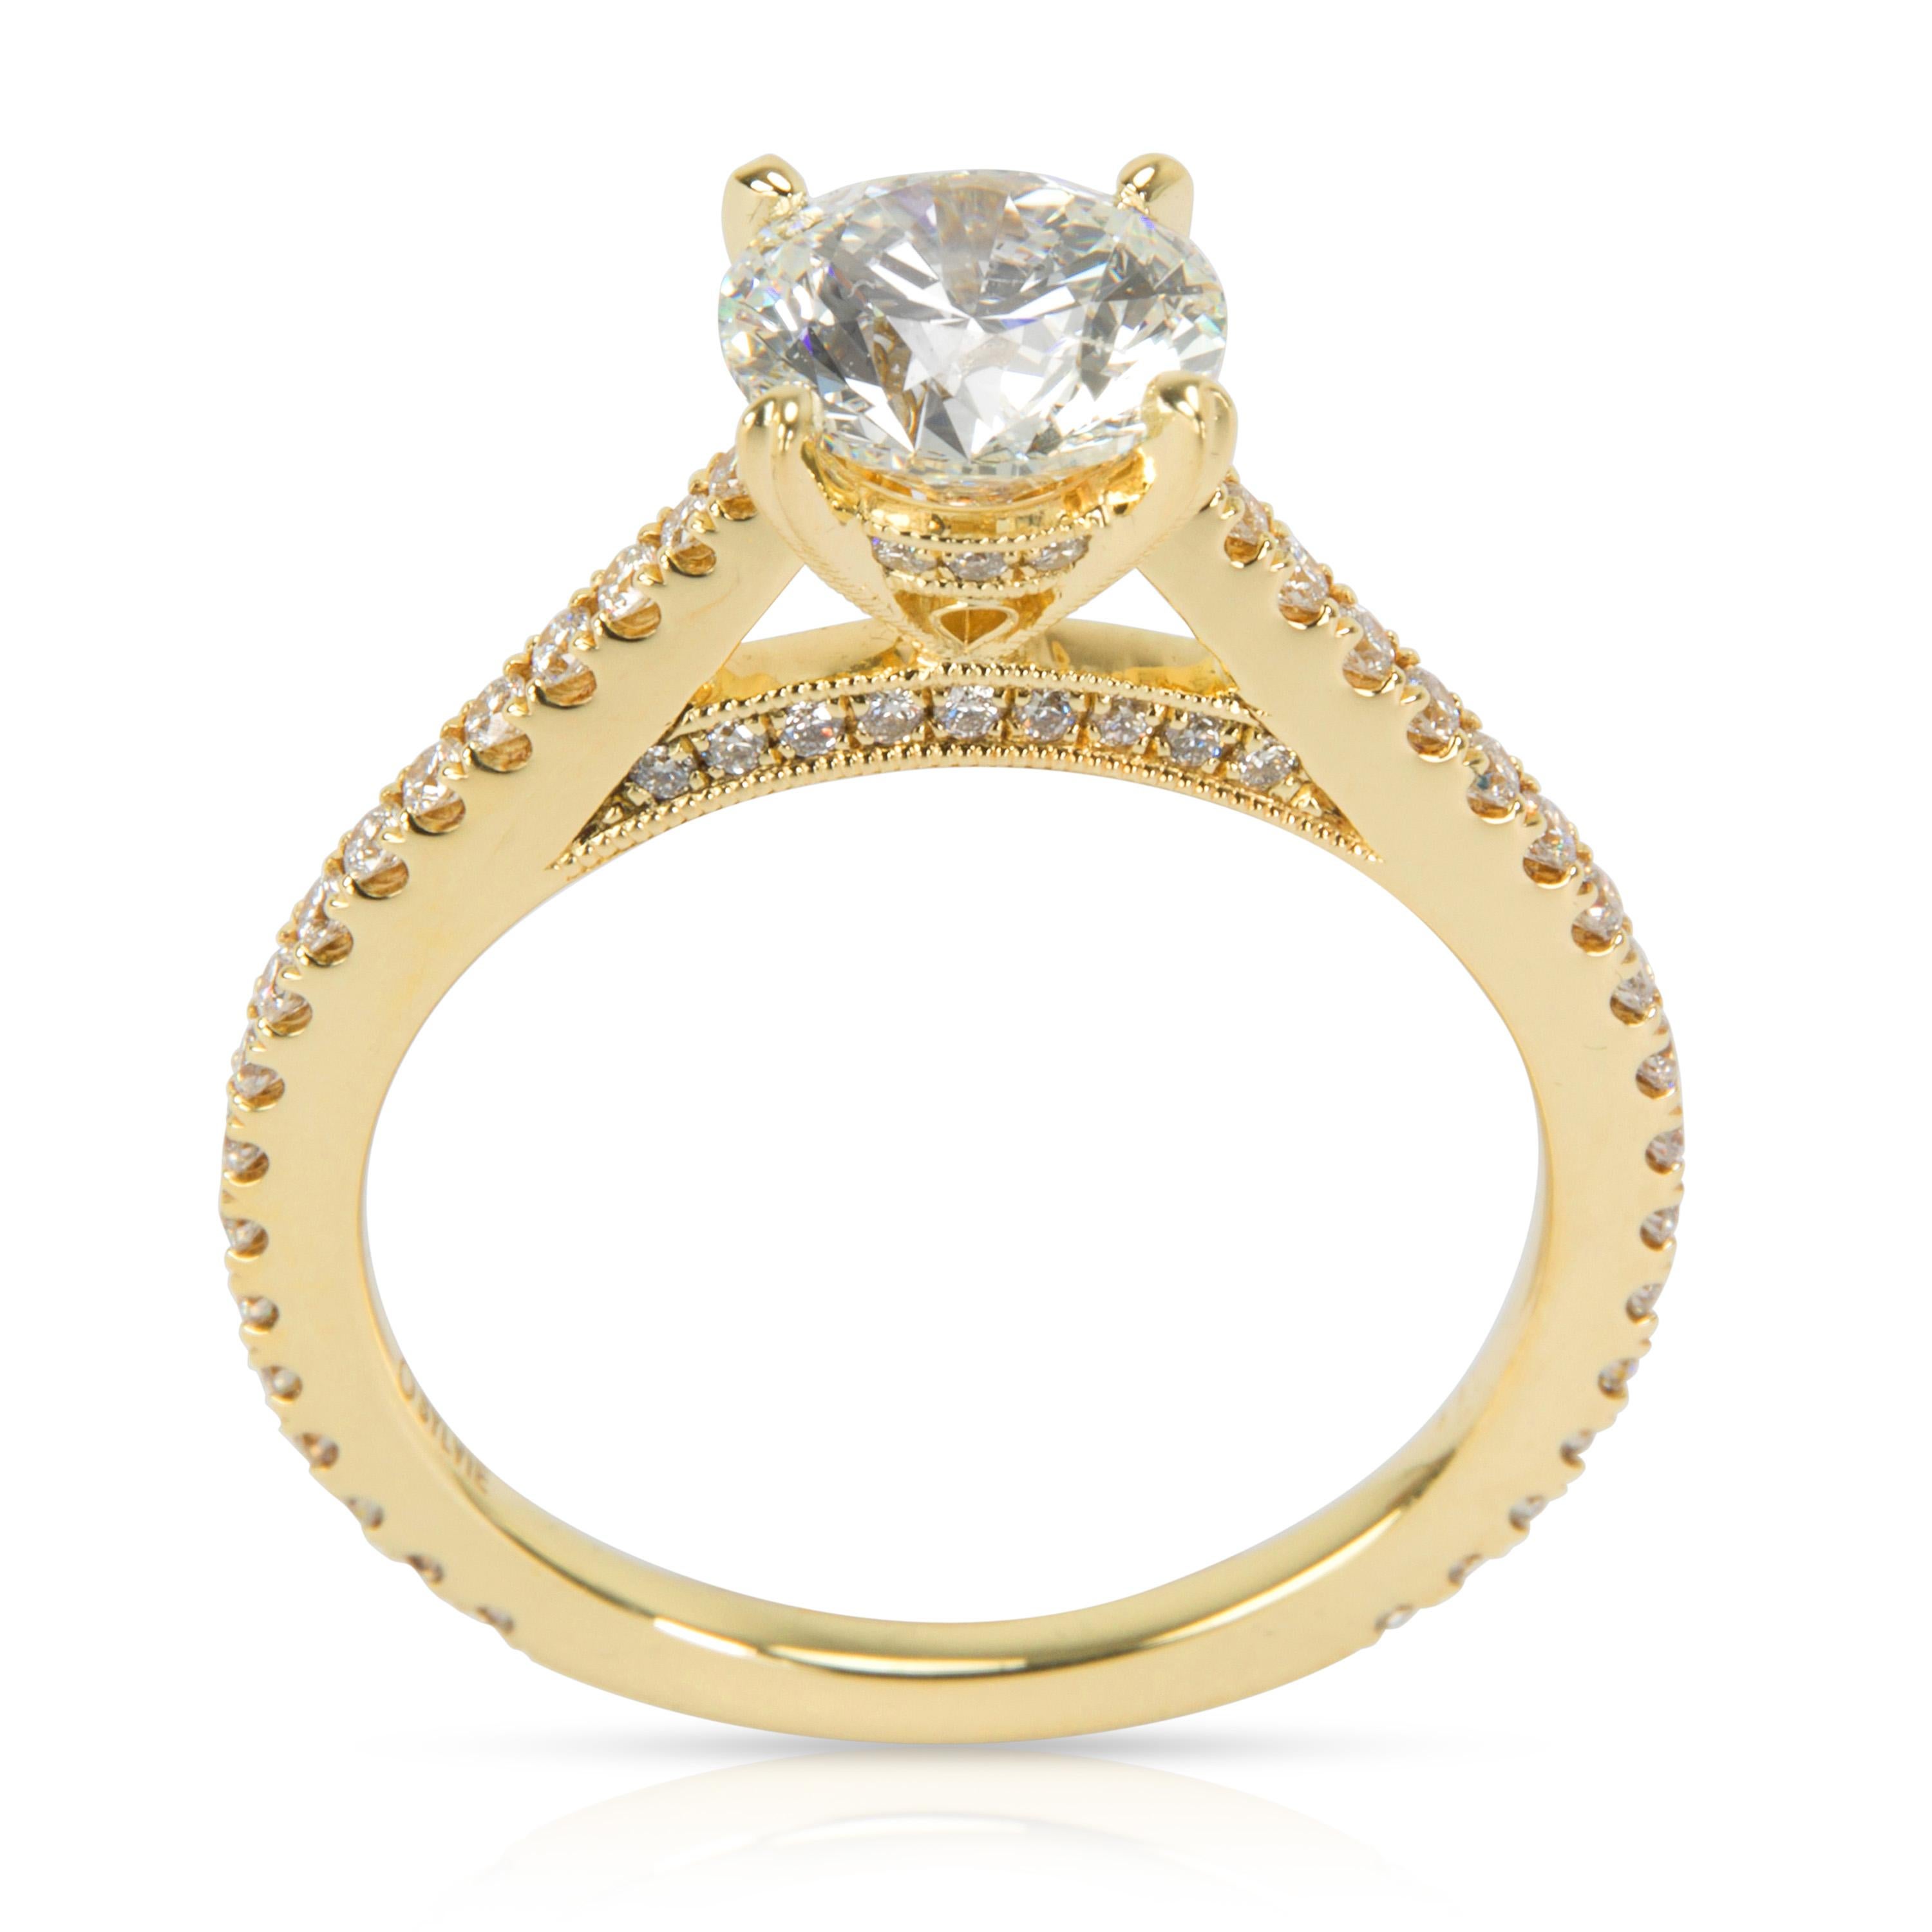 Round Cut Sylvie Diamond Engagement Ring in 14 Karat Yellow Gold GIA G SI2 1.22 Carat